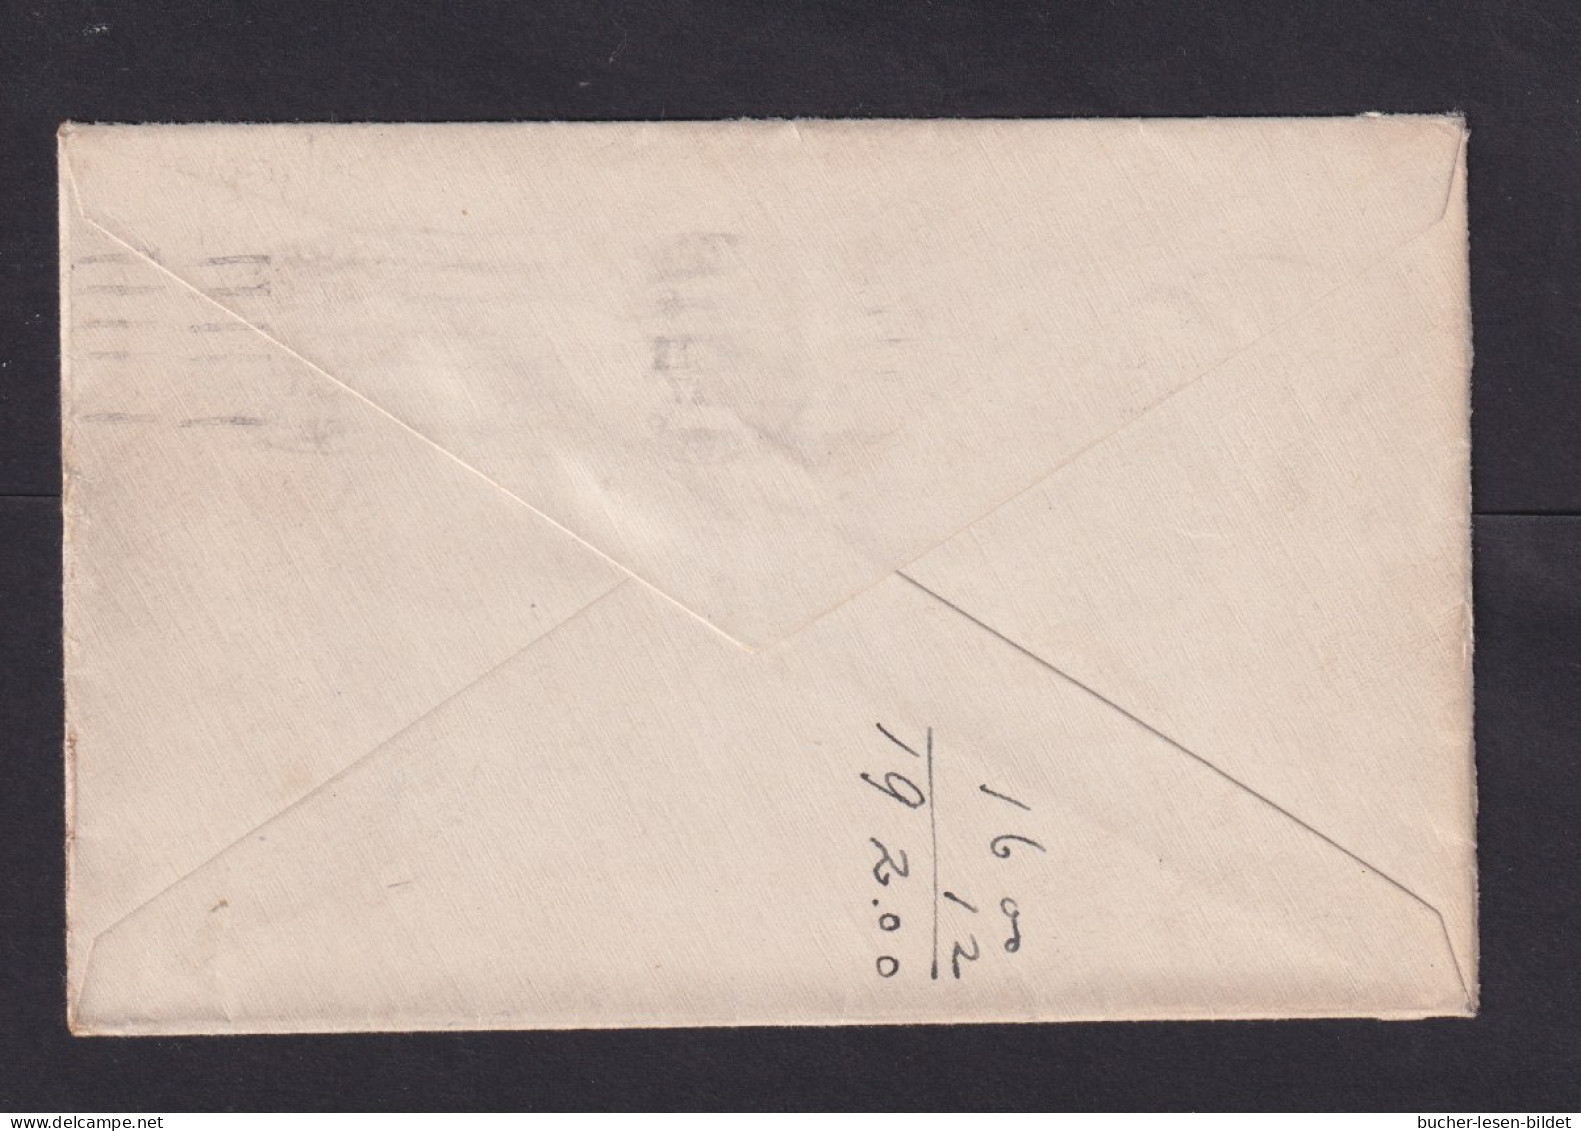 1917 - 2 C. Geschnitten Mit Platten-Nummer "7610" Auf Brief Ab New York  - Storia Postale